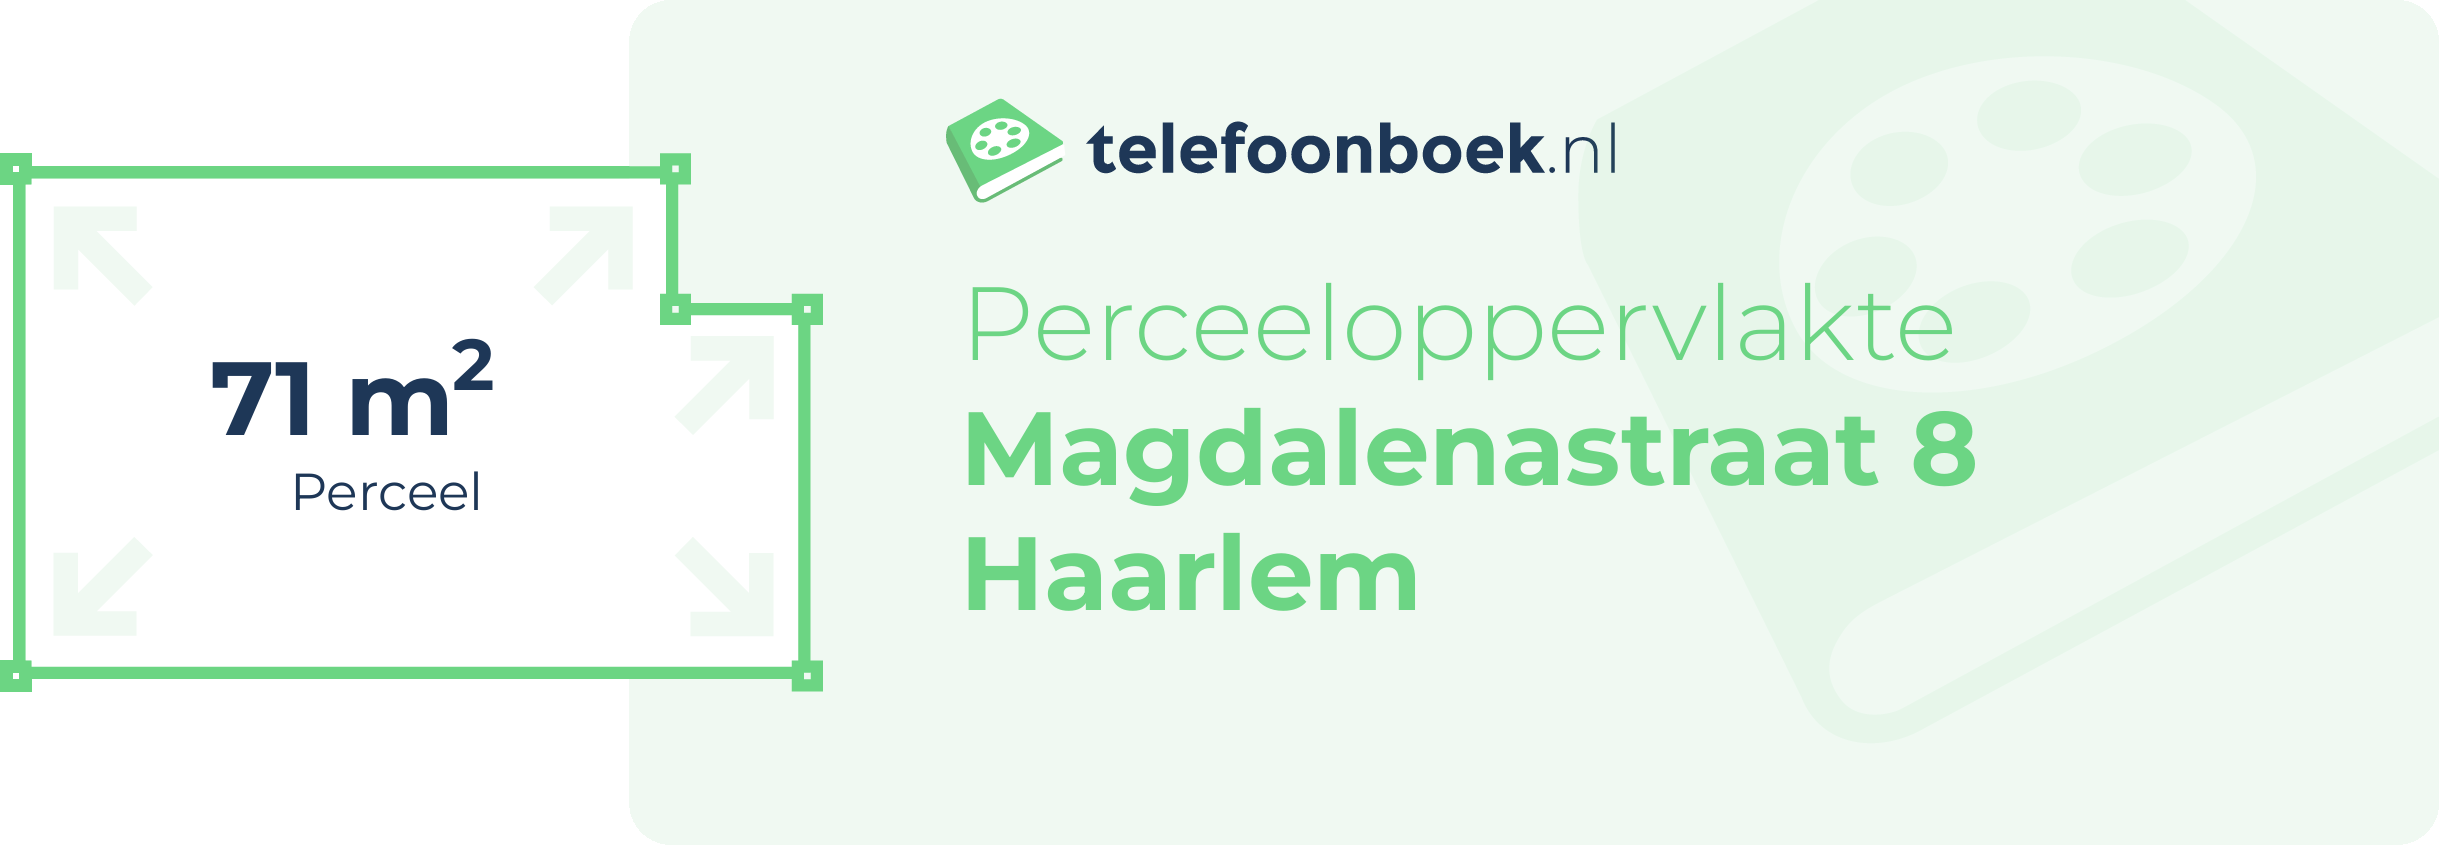 Perceeloppervlakte Magdalenastraat 8 Haarlem